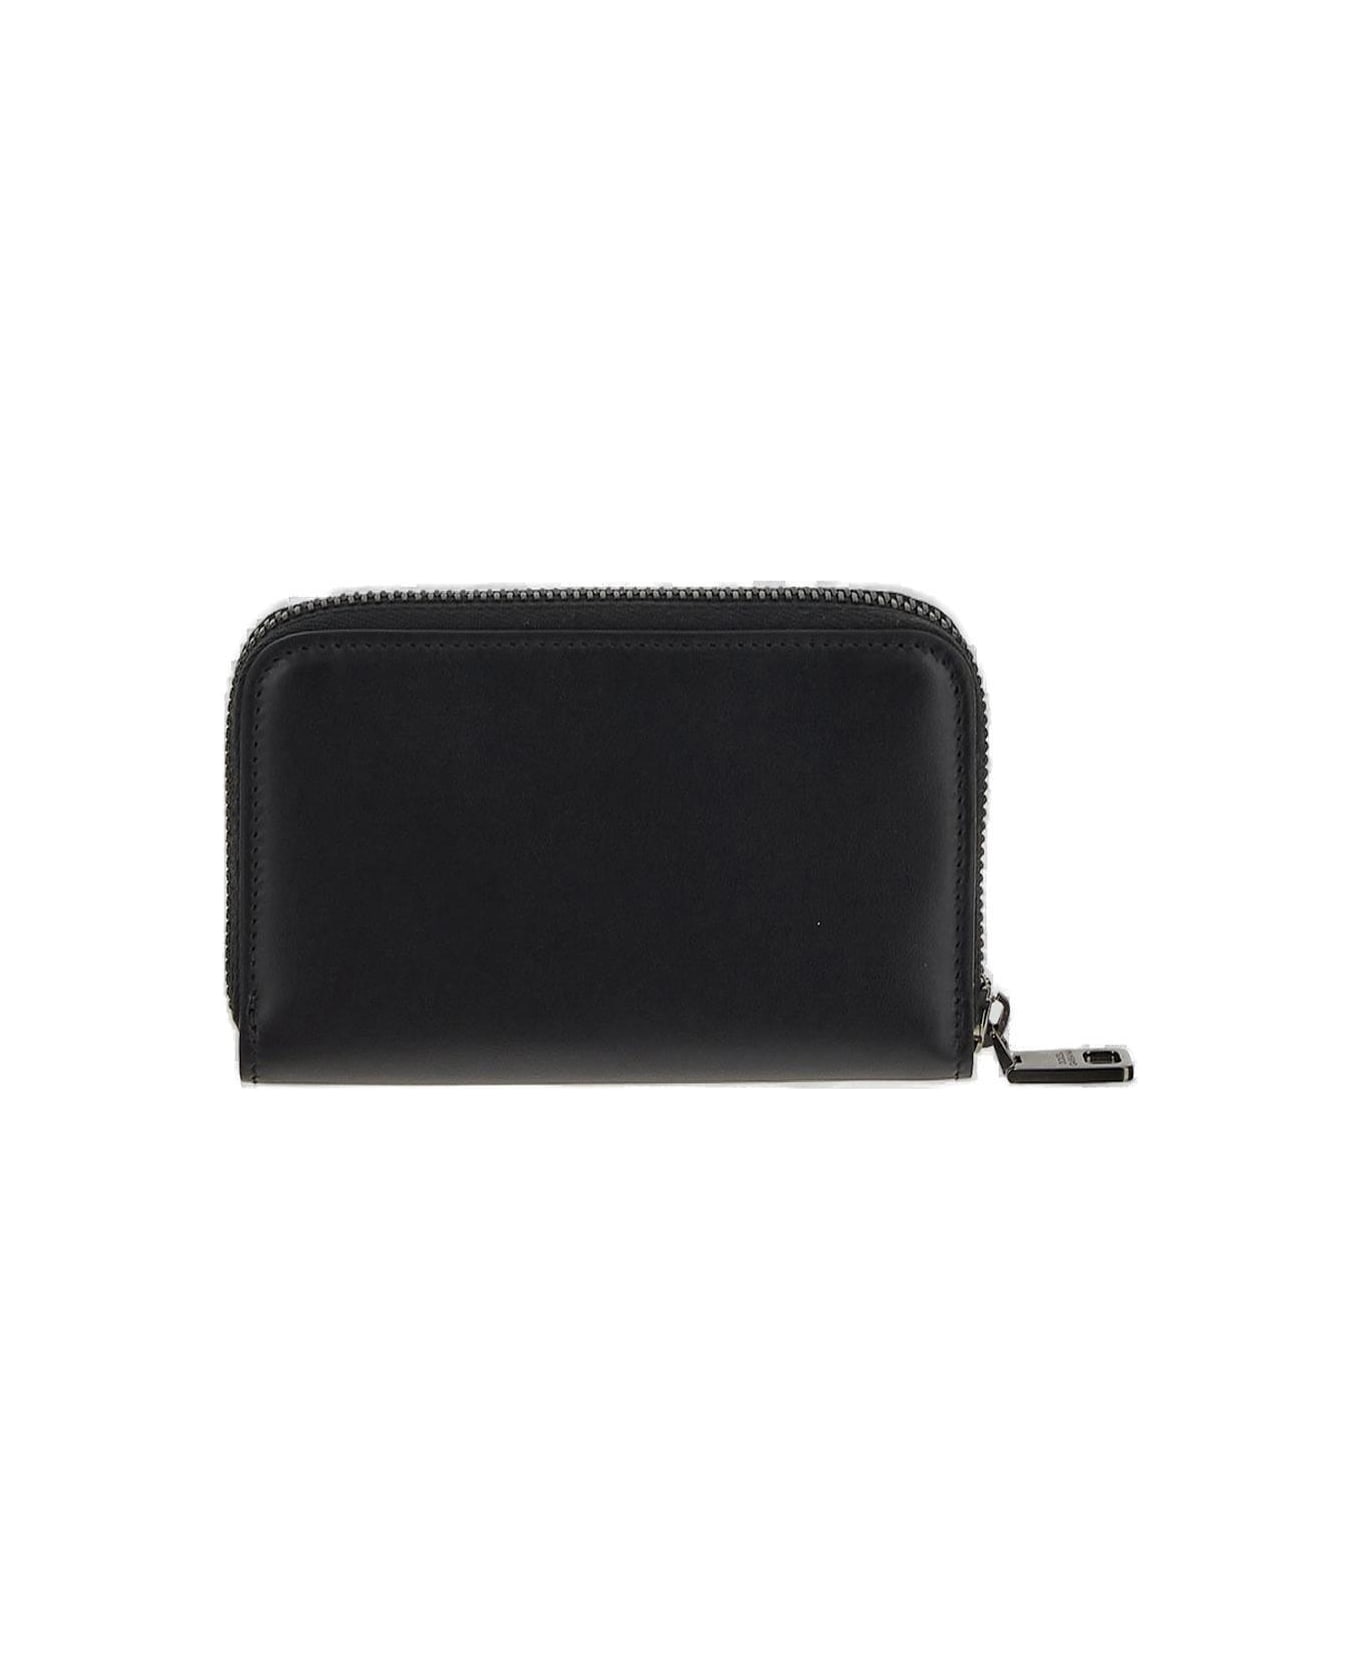 Dolce & Gabbana Zipped Wallet - Black 財布